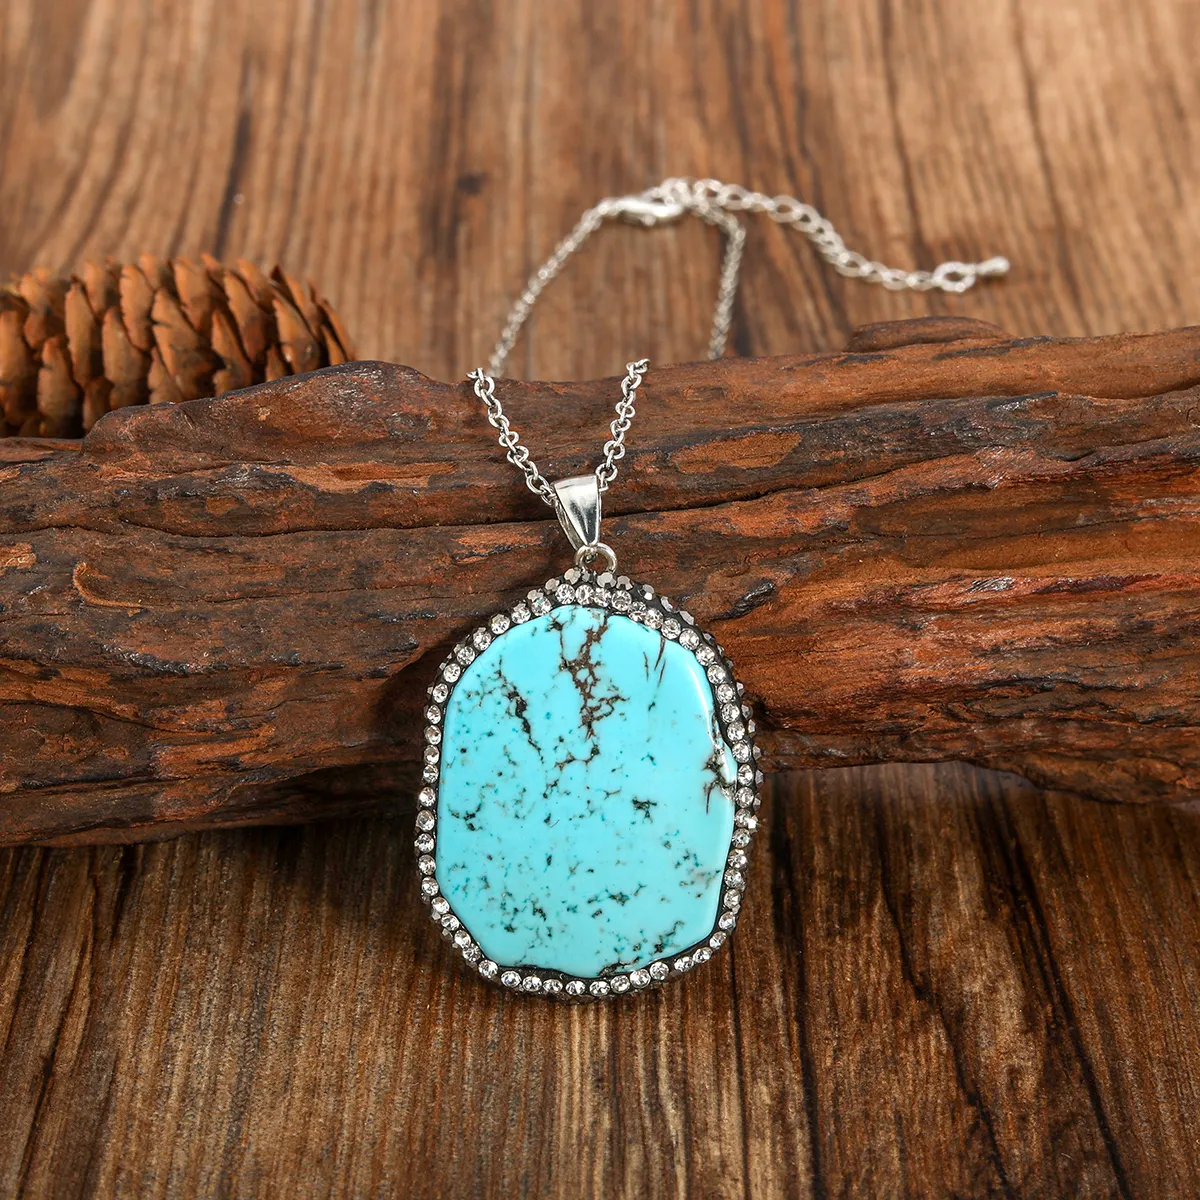 Trendy Personality irregularity oval pendant bohomia necklace malachite turquoise pendant necklace wholesale unisex